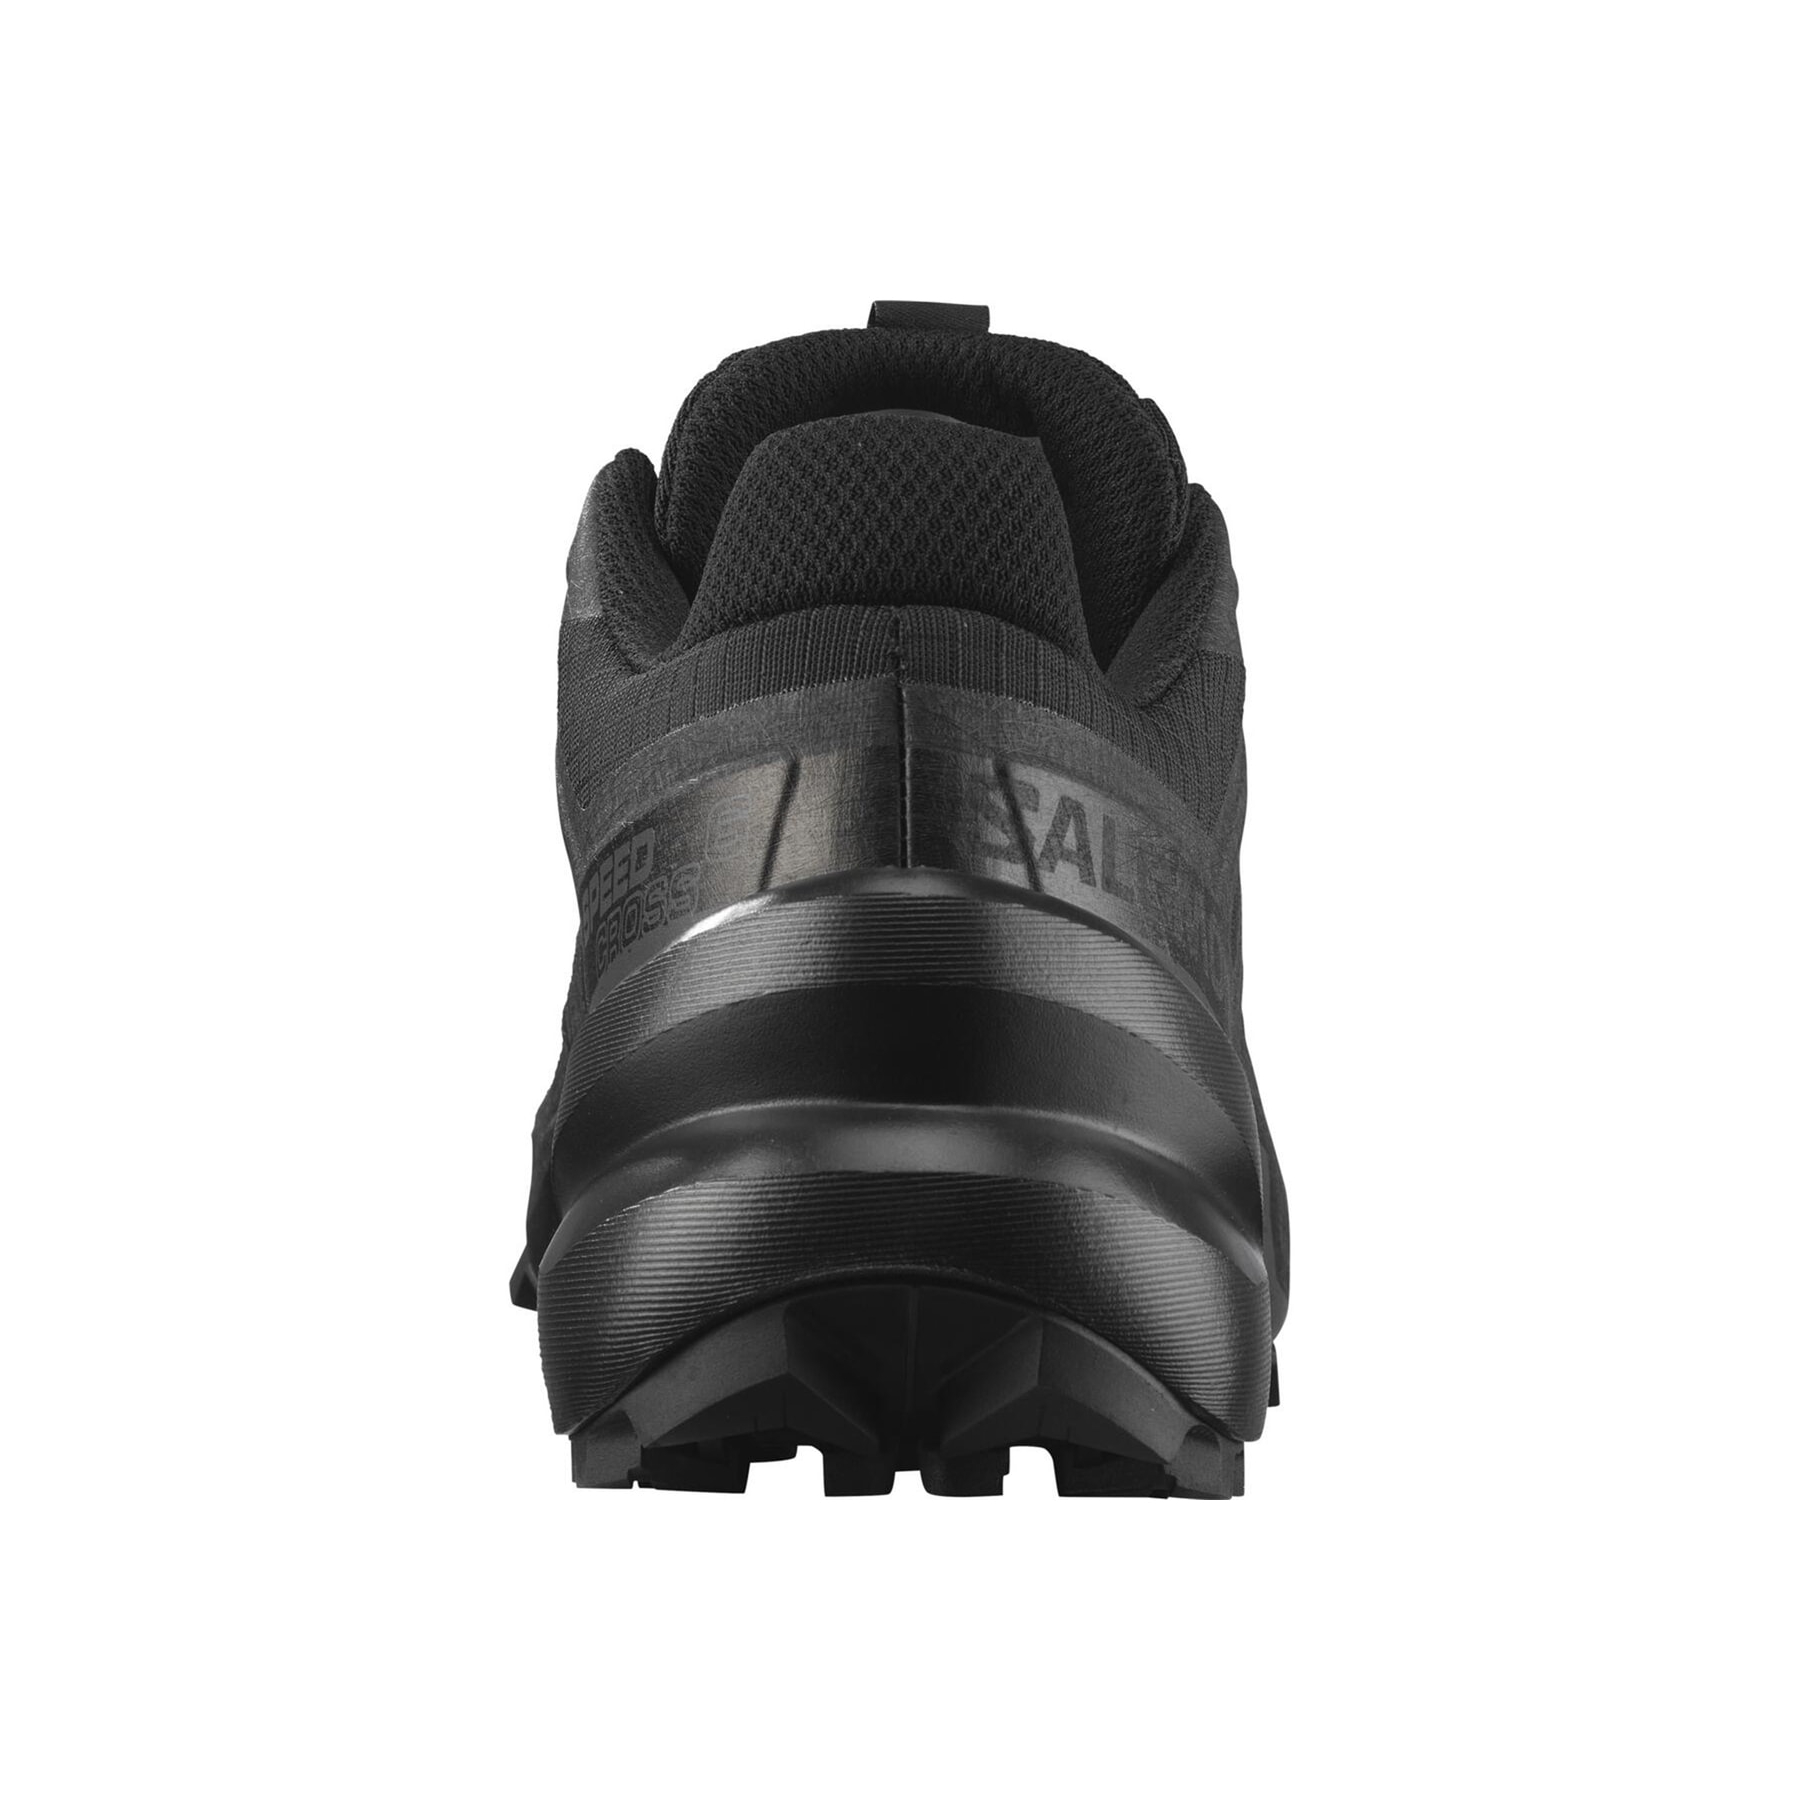 Salomon Speedcross 6 Kadın Siyah Outdoor Ayakkabı (L41742800)